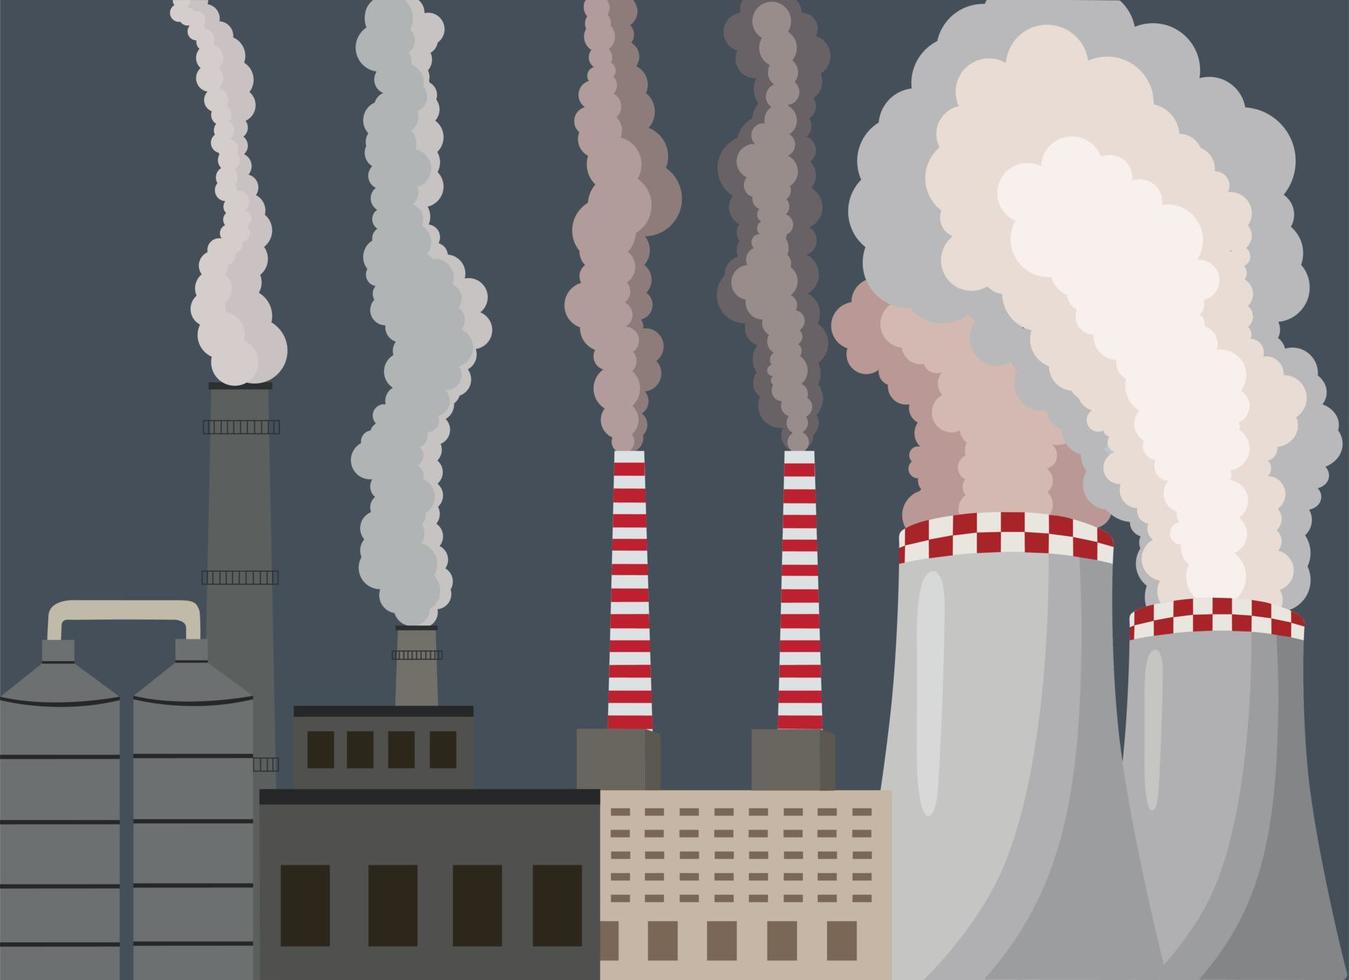 Luftverschmutzung. industrielle Fabrik. Abgase verseuchen die städtische Atmosphäre. Giftiger Smog. Feinstaub, Luftverschmutzung, Industriesmog, Schadstoffausstoß. Vektor-Illustration. vektor